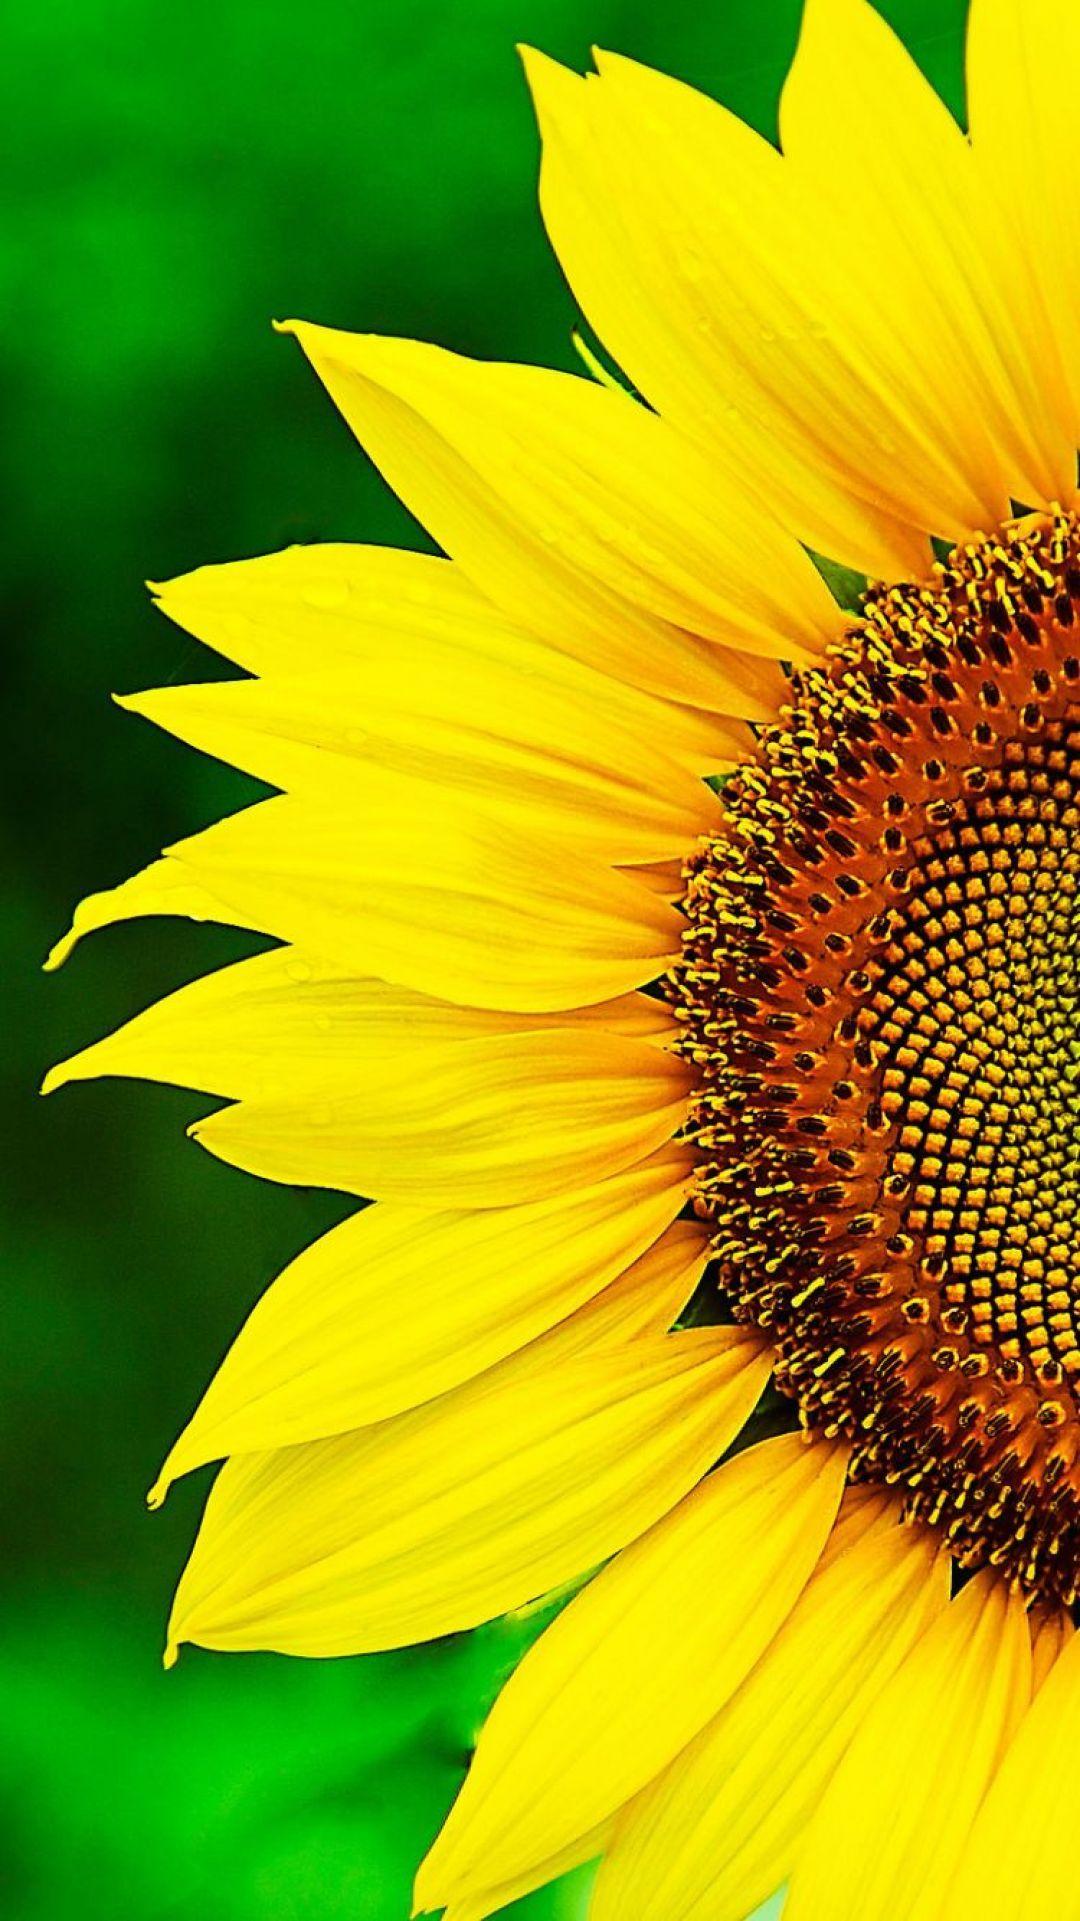 Sunflower 4k Wallpapers - Top Free Sunflower 4k Backgrounds - WallpaperAccess